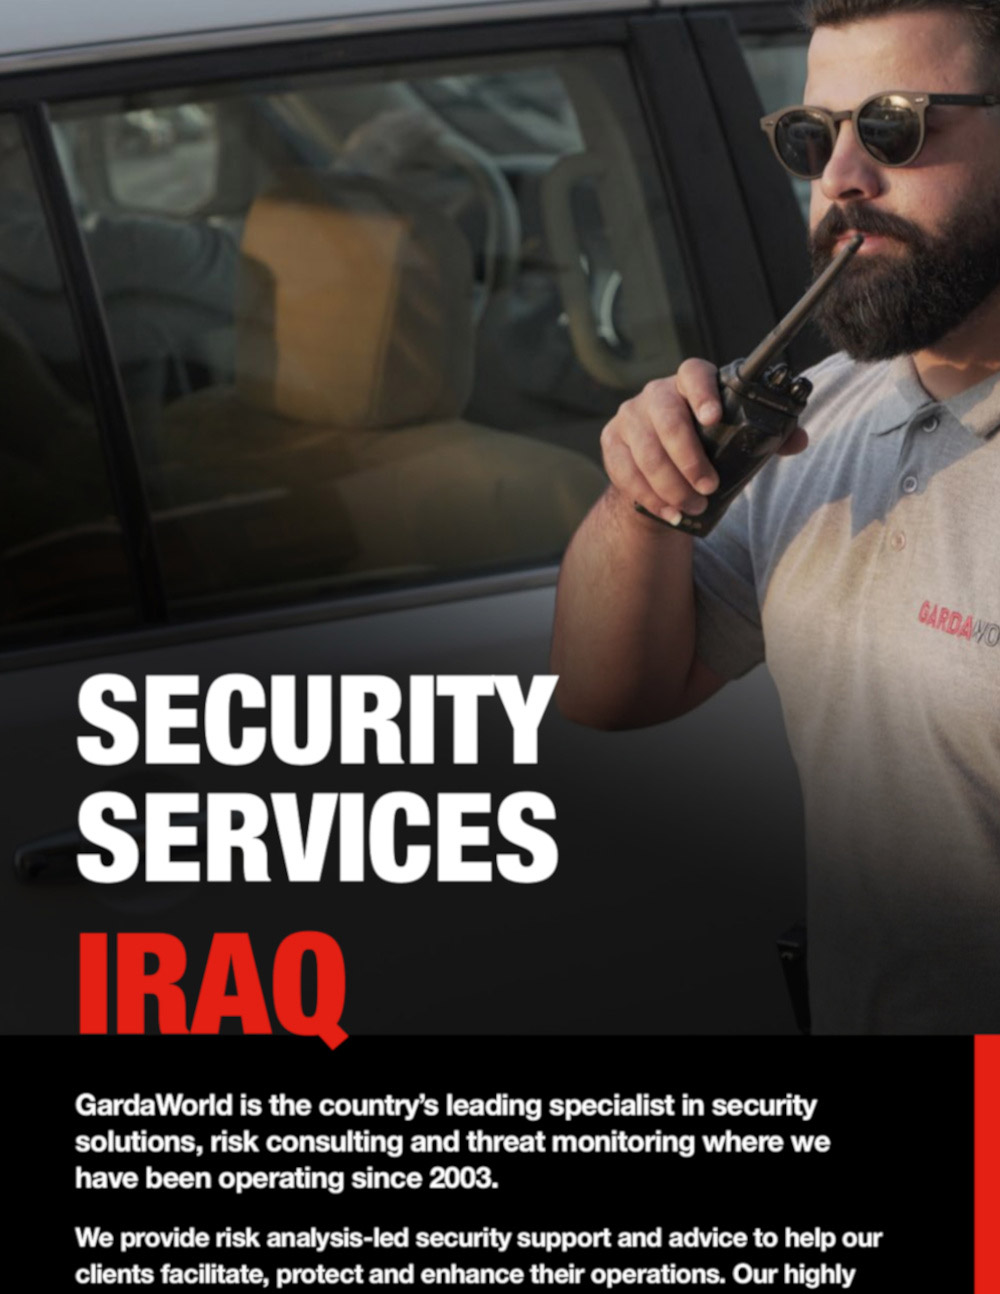  Services de sécurité en Irak